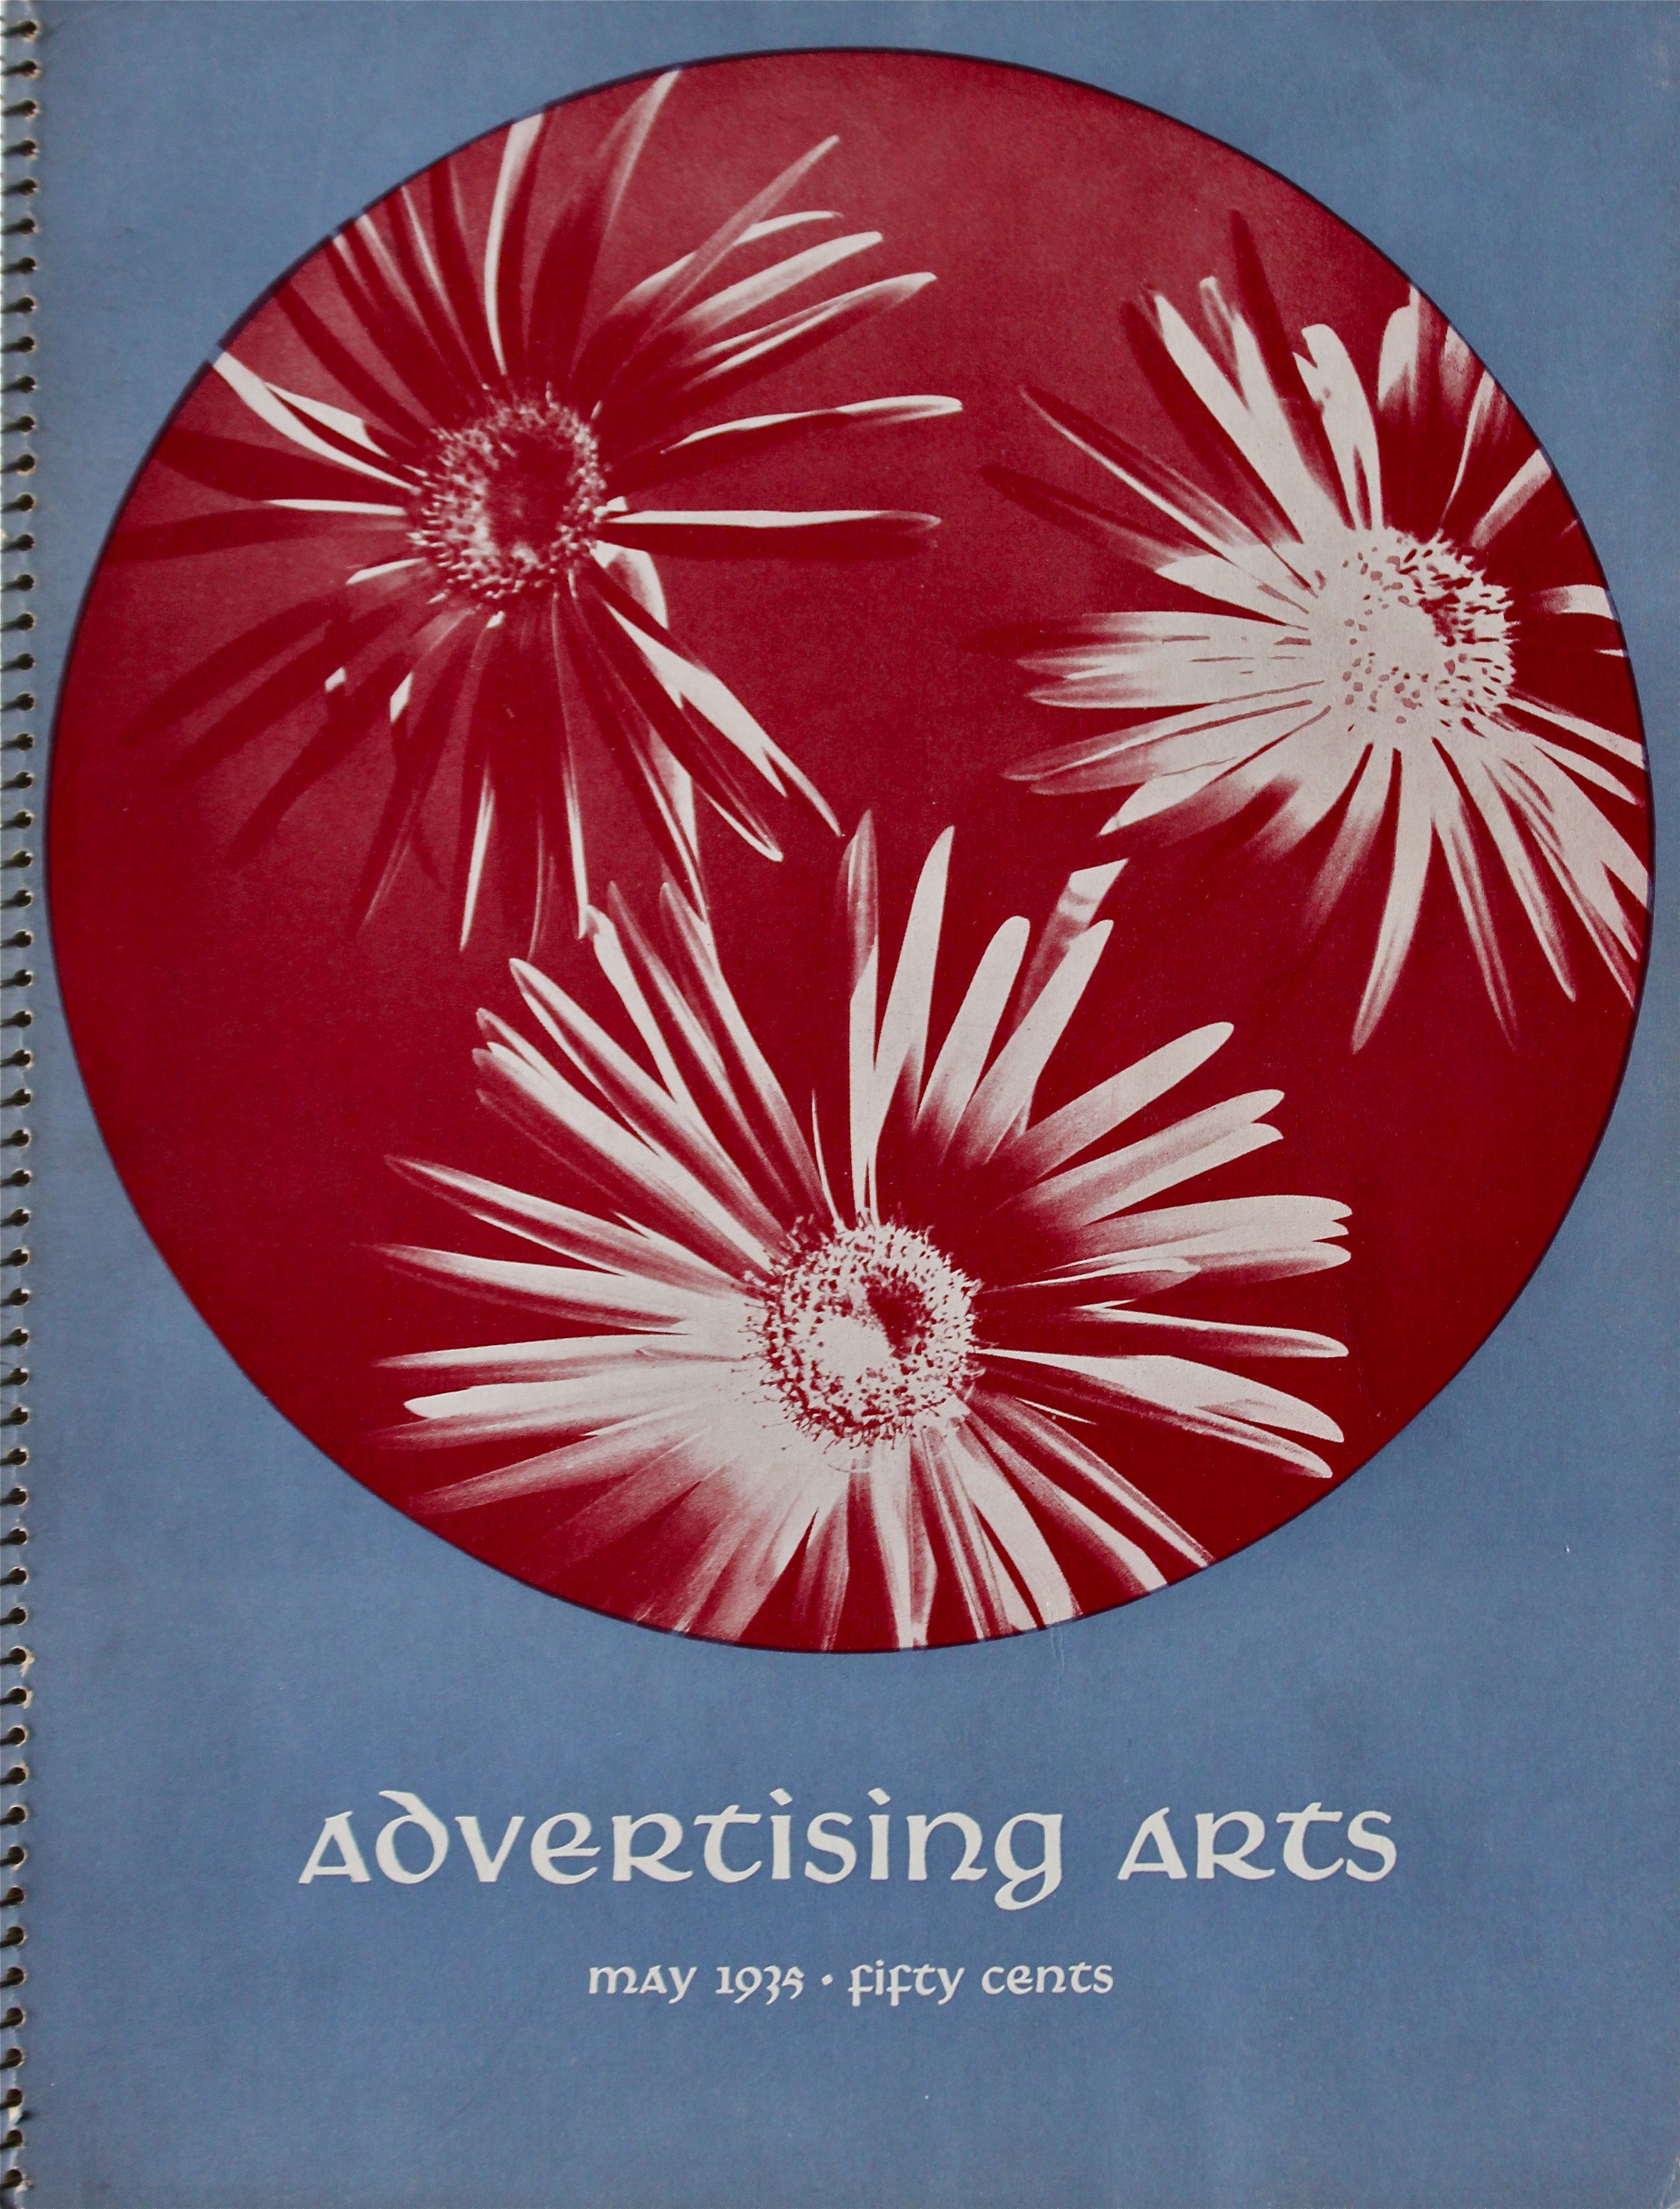 N.G.H., Salter, in: Advertising Arts, H.3 (1935), S. 34-36